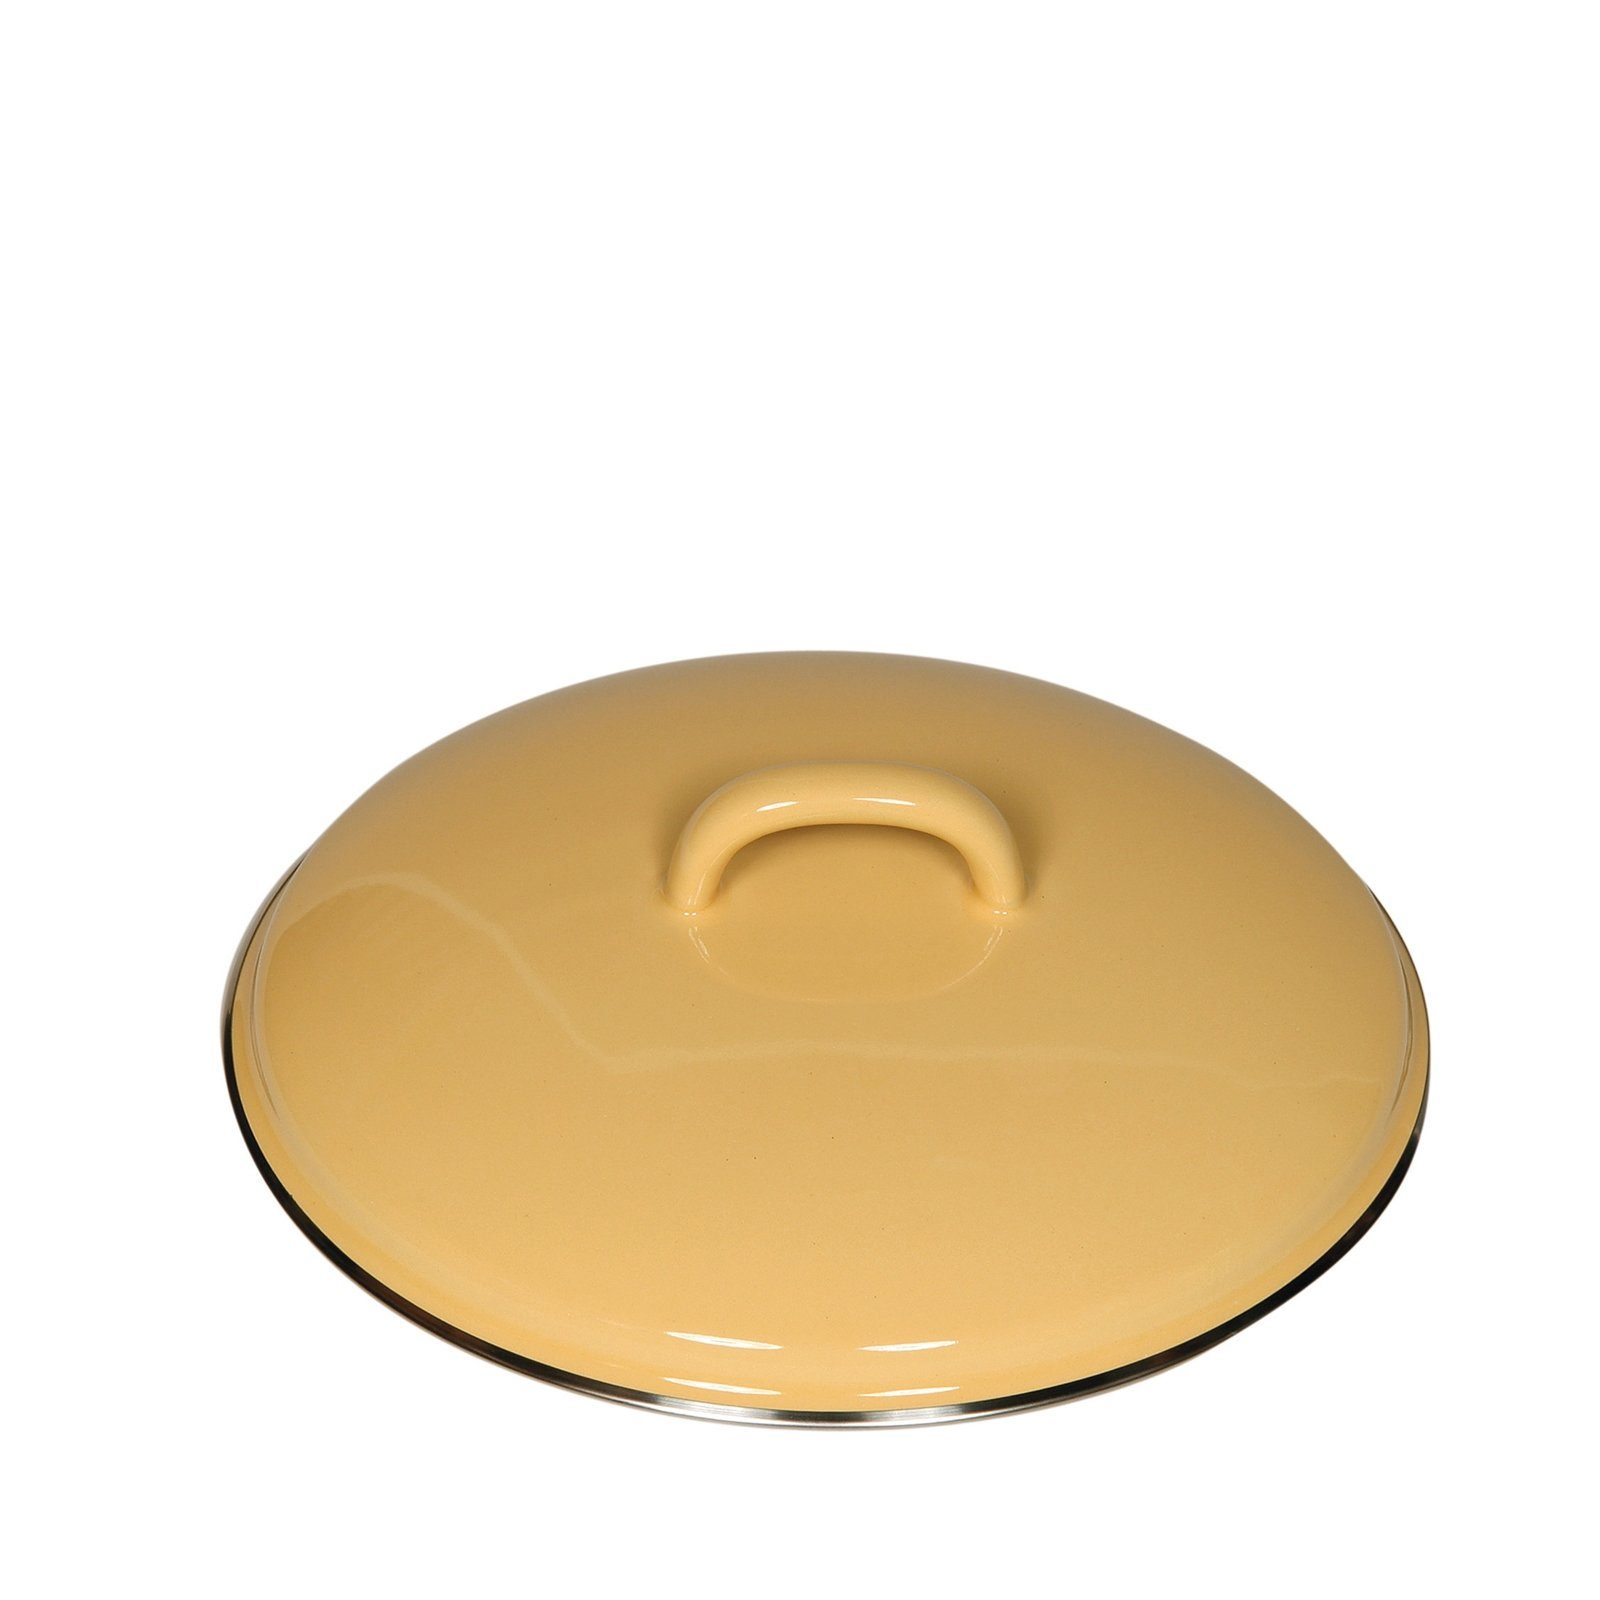 Riess Topfdeckel Deckel Color, bei cm goldgelb Nickelallergie Classic 20 Empfohlen